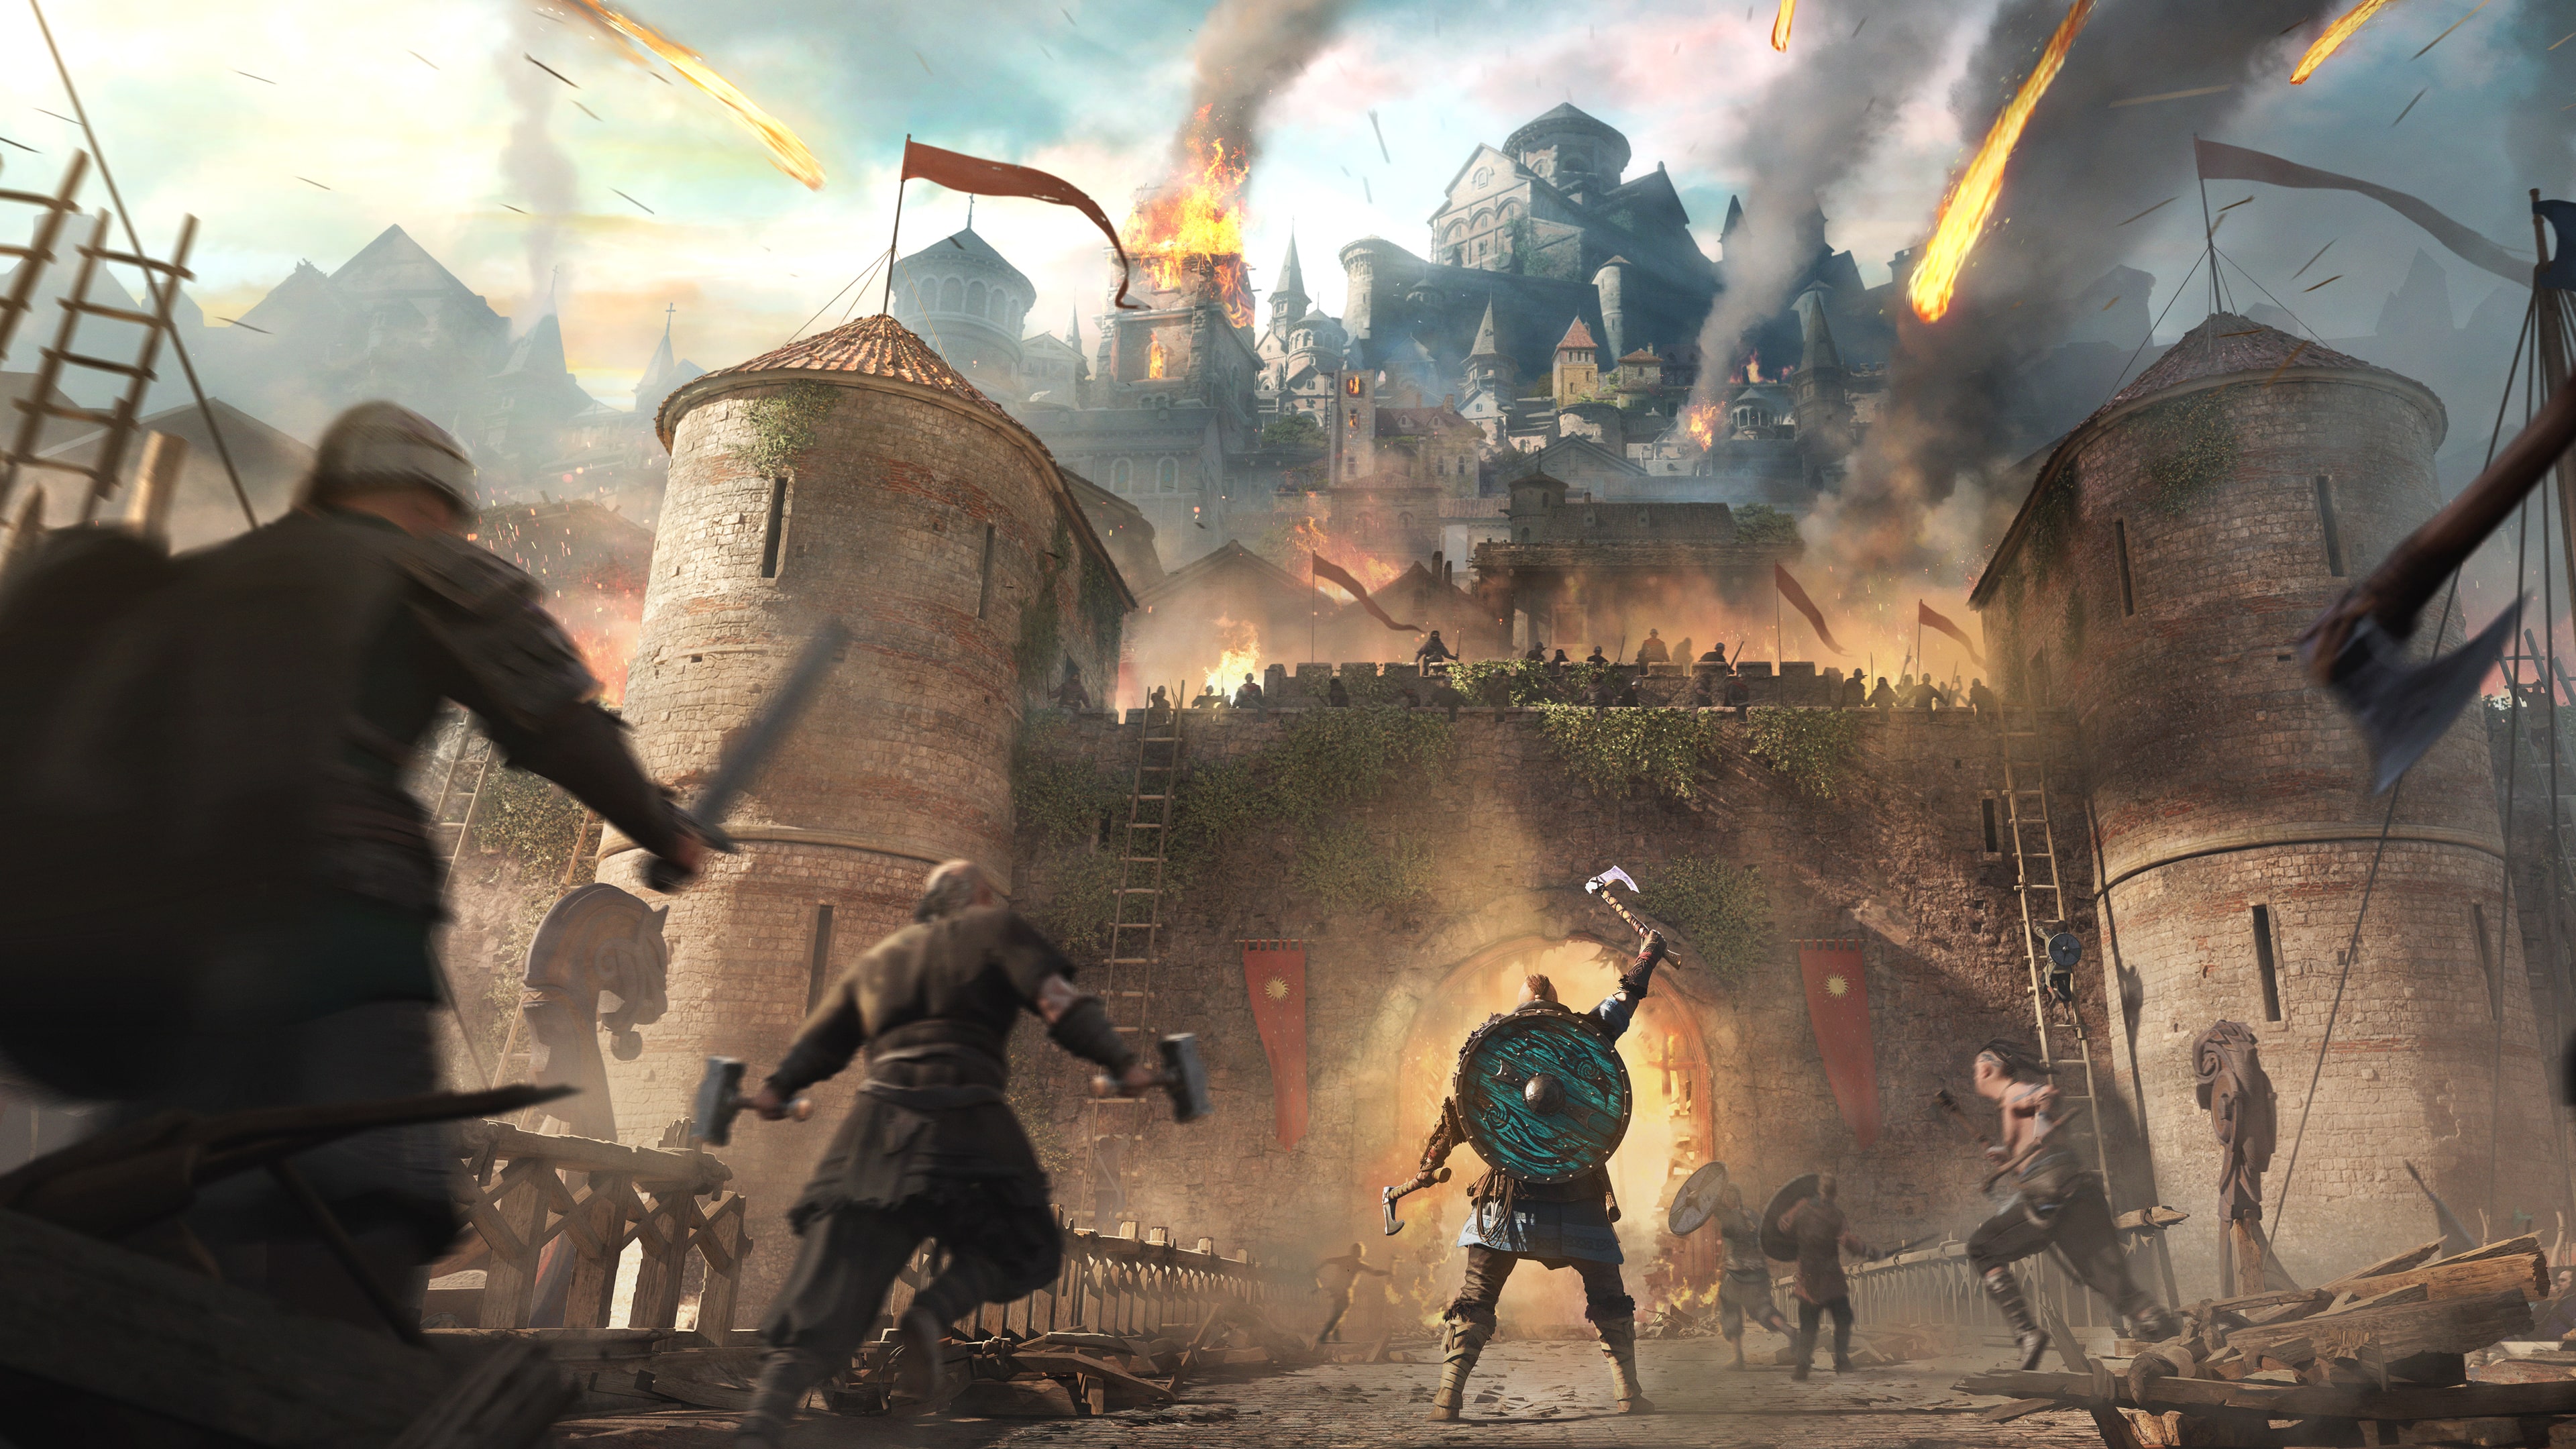 Comprar Assassin's Creed Valhalla: Dawn of Ragnarök PS4 Playstation Store